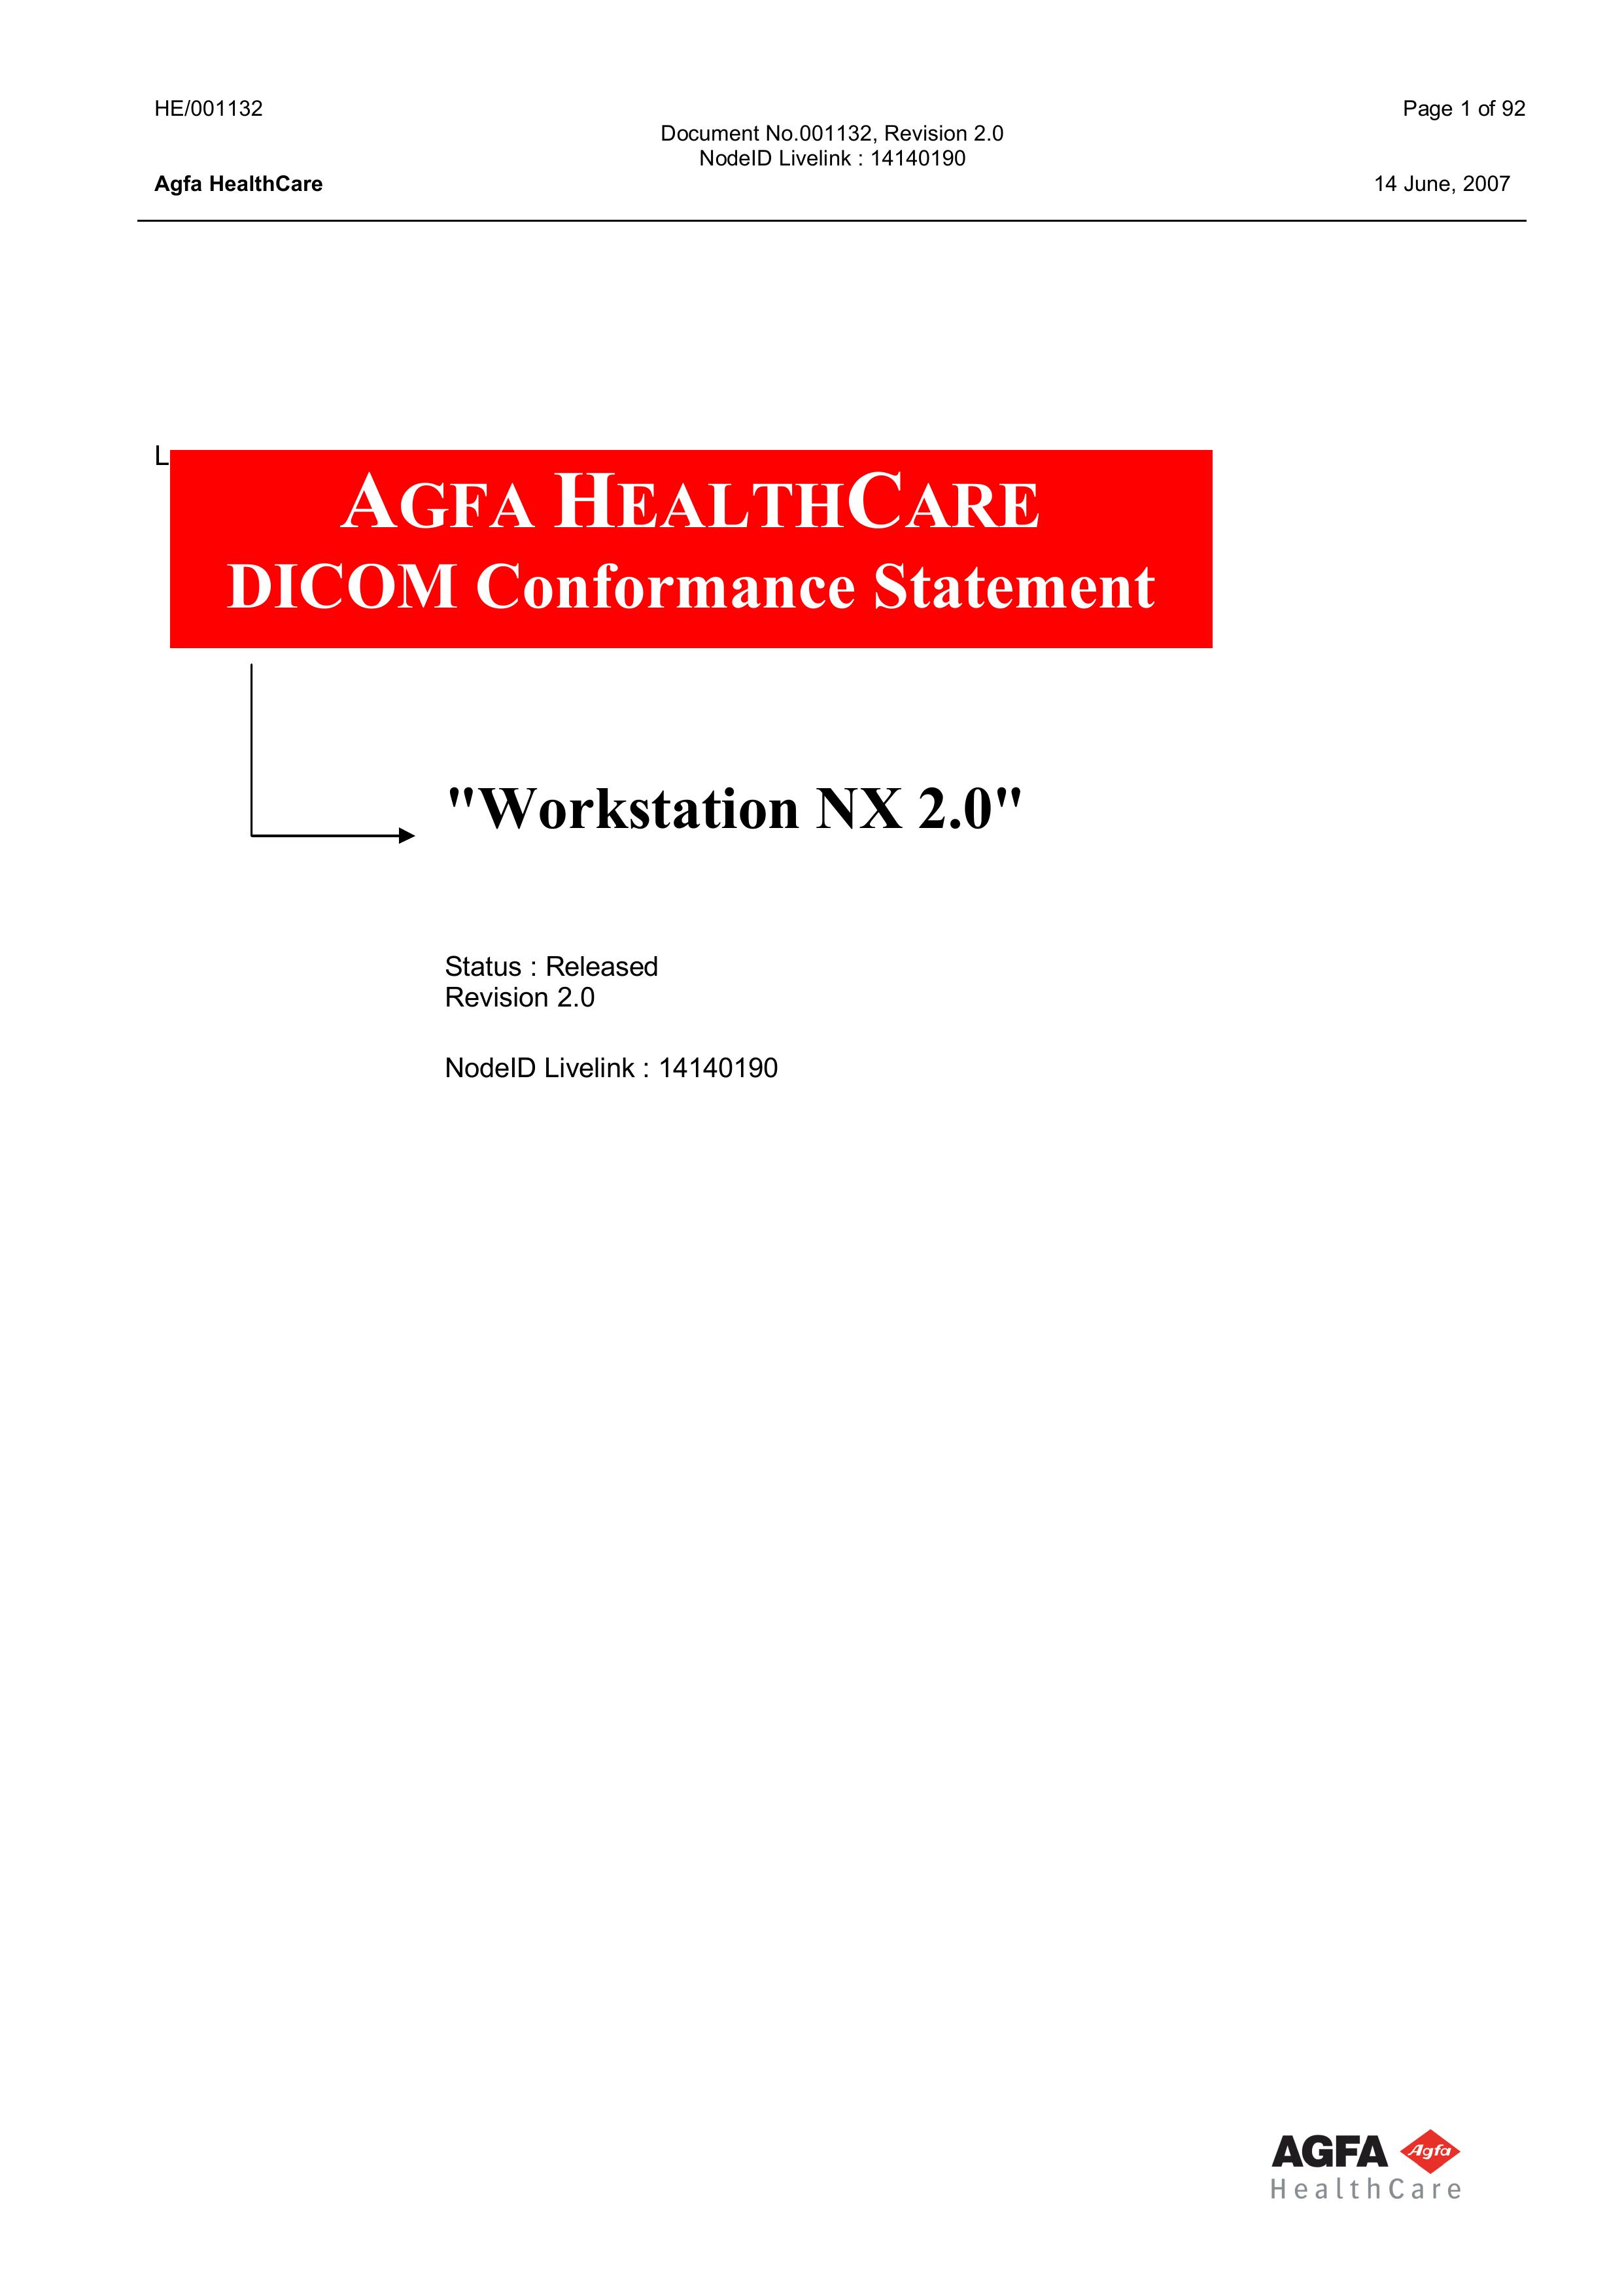 AGFA HE/001132 Medical Alarms User Manual